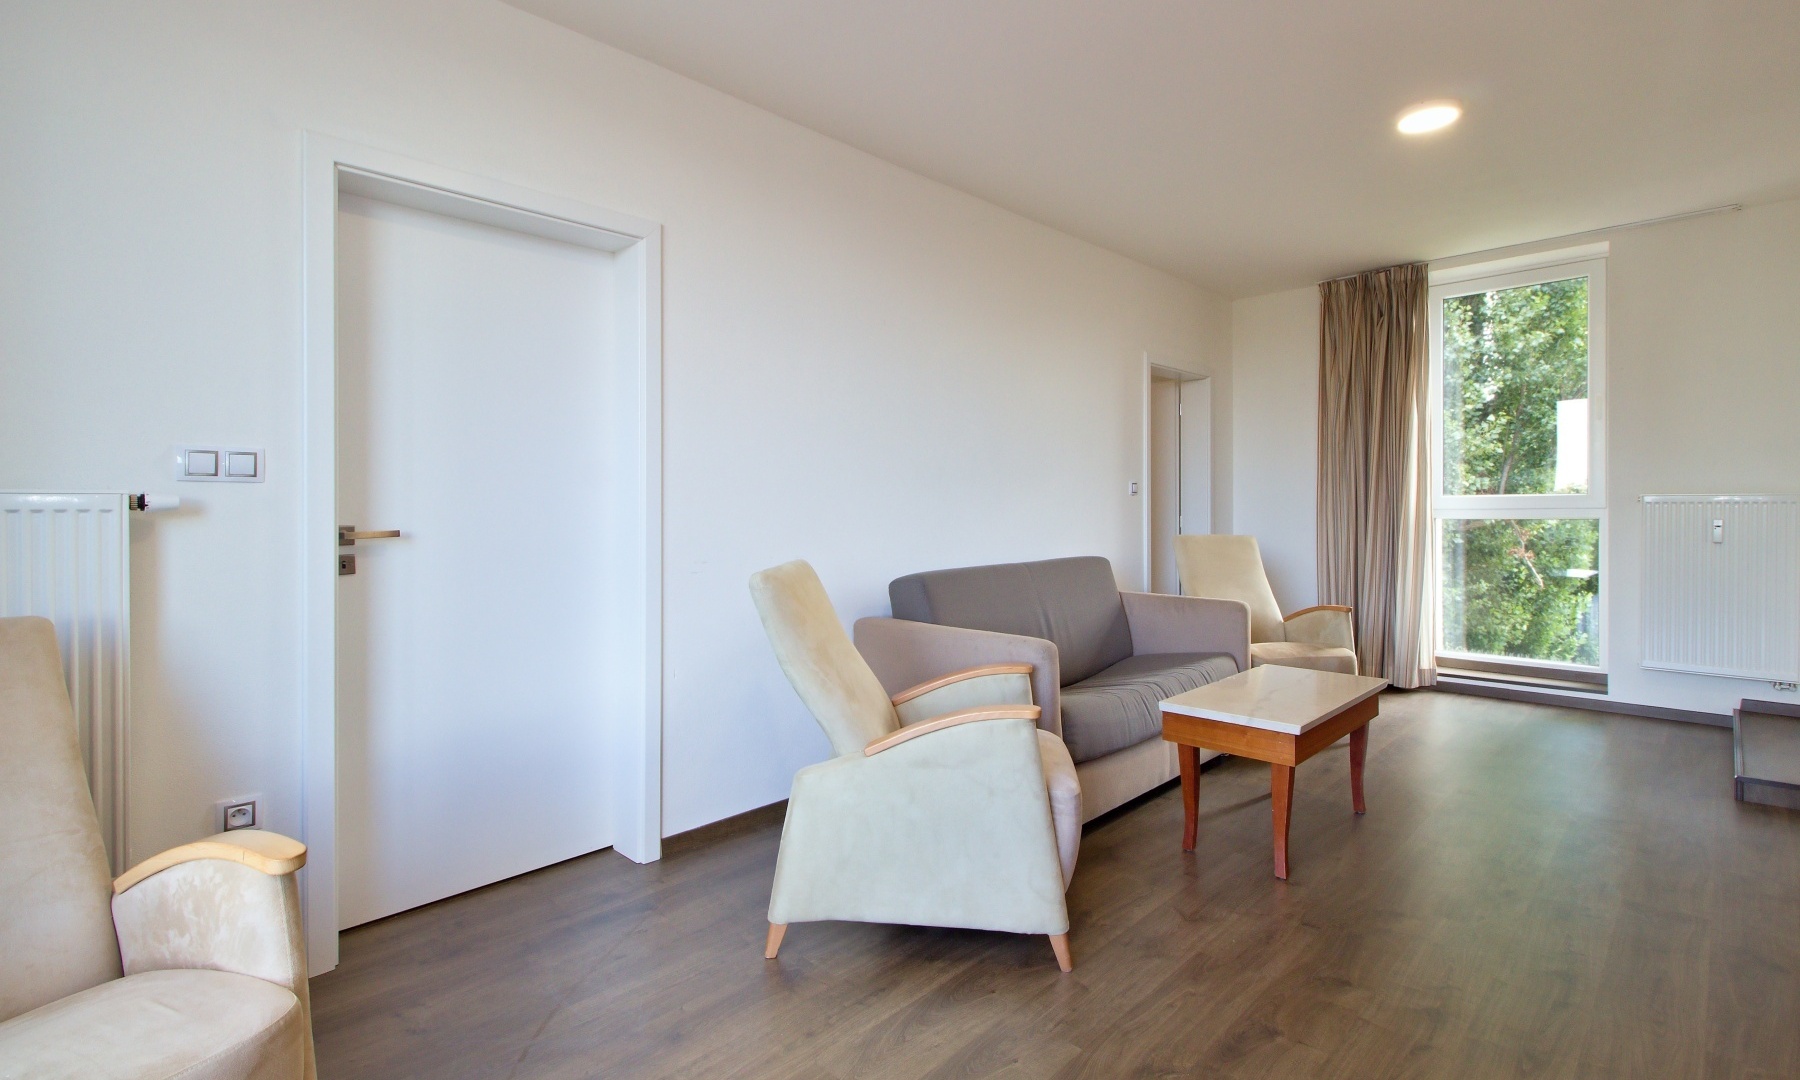 Pronájem pokoje v prostorném bytě 4+1, o výměře 9 m² - Plzeň - Skvrňany